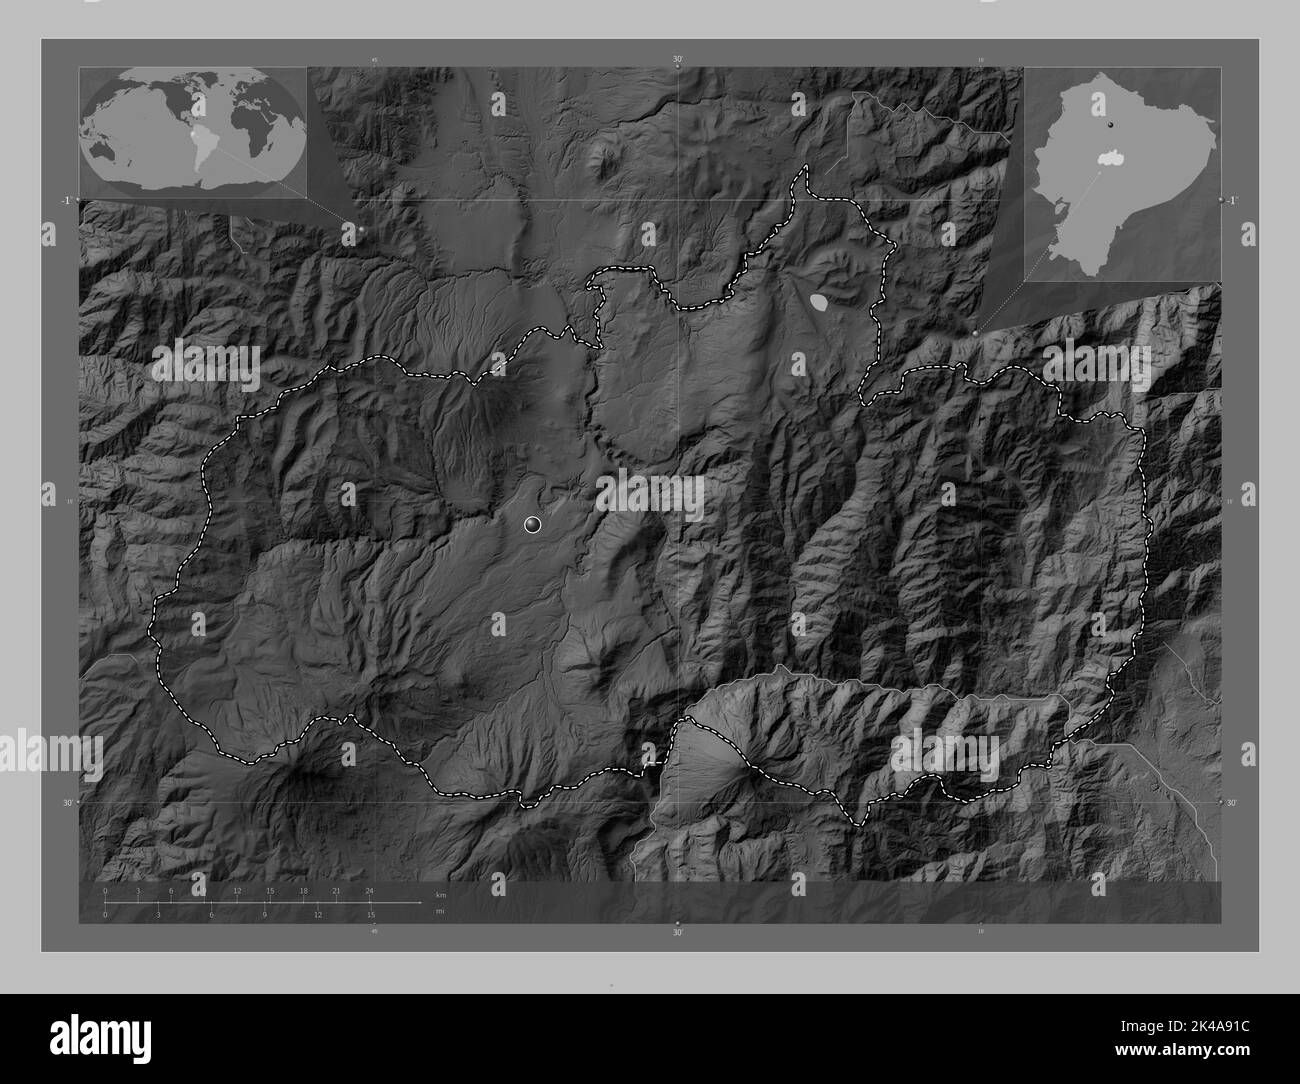 Tungurahua, province de l'Équateur. Carte d'altitude en niveaux de gris avec lacs et rivières. Cartes d'emplacement auxiliaire d'angle Banque D'Images